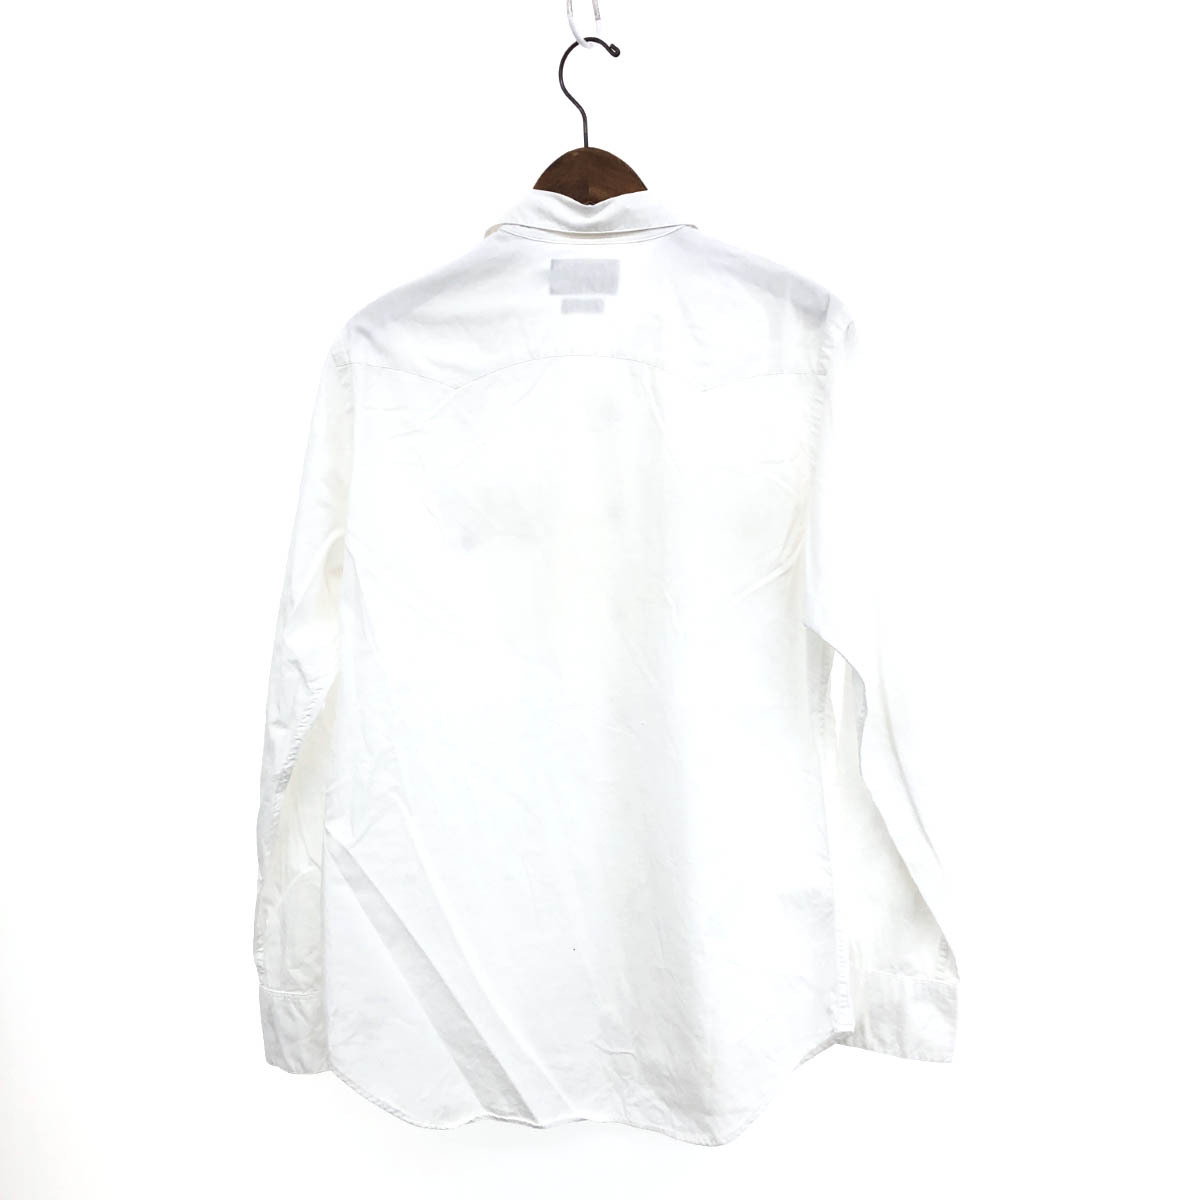 ◆RRL ダブルアールエル ウエスタンシャツ サイズS◆ ホワイト コットン メンズ トップス 長袖_画像2